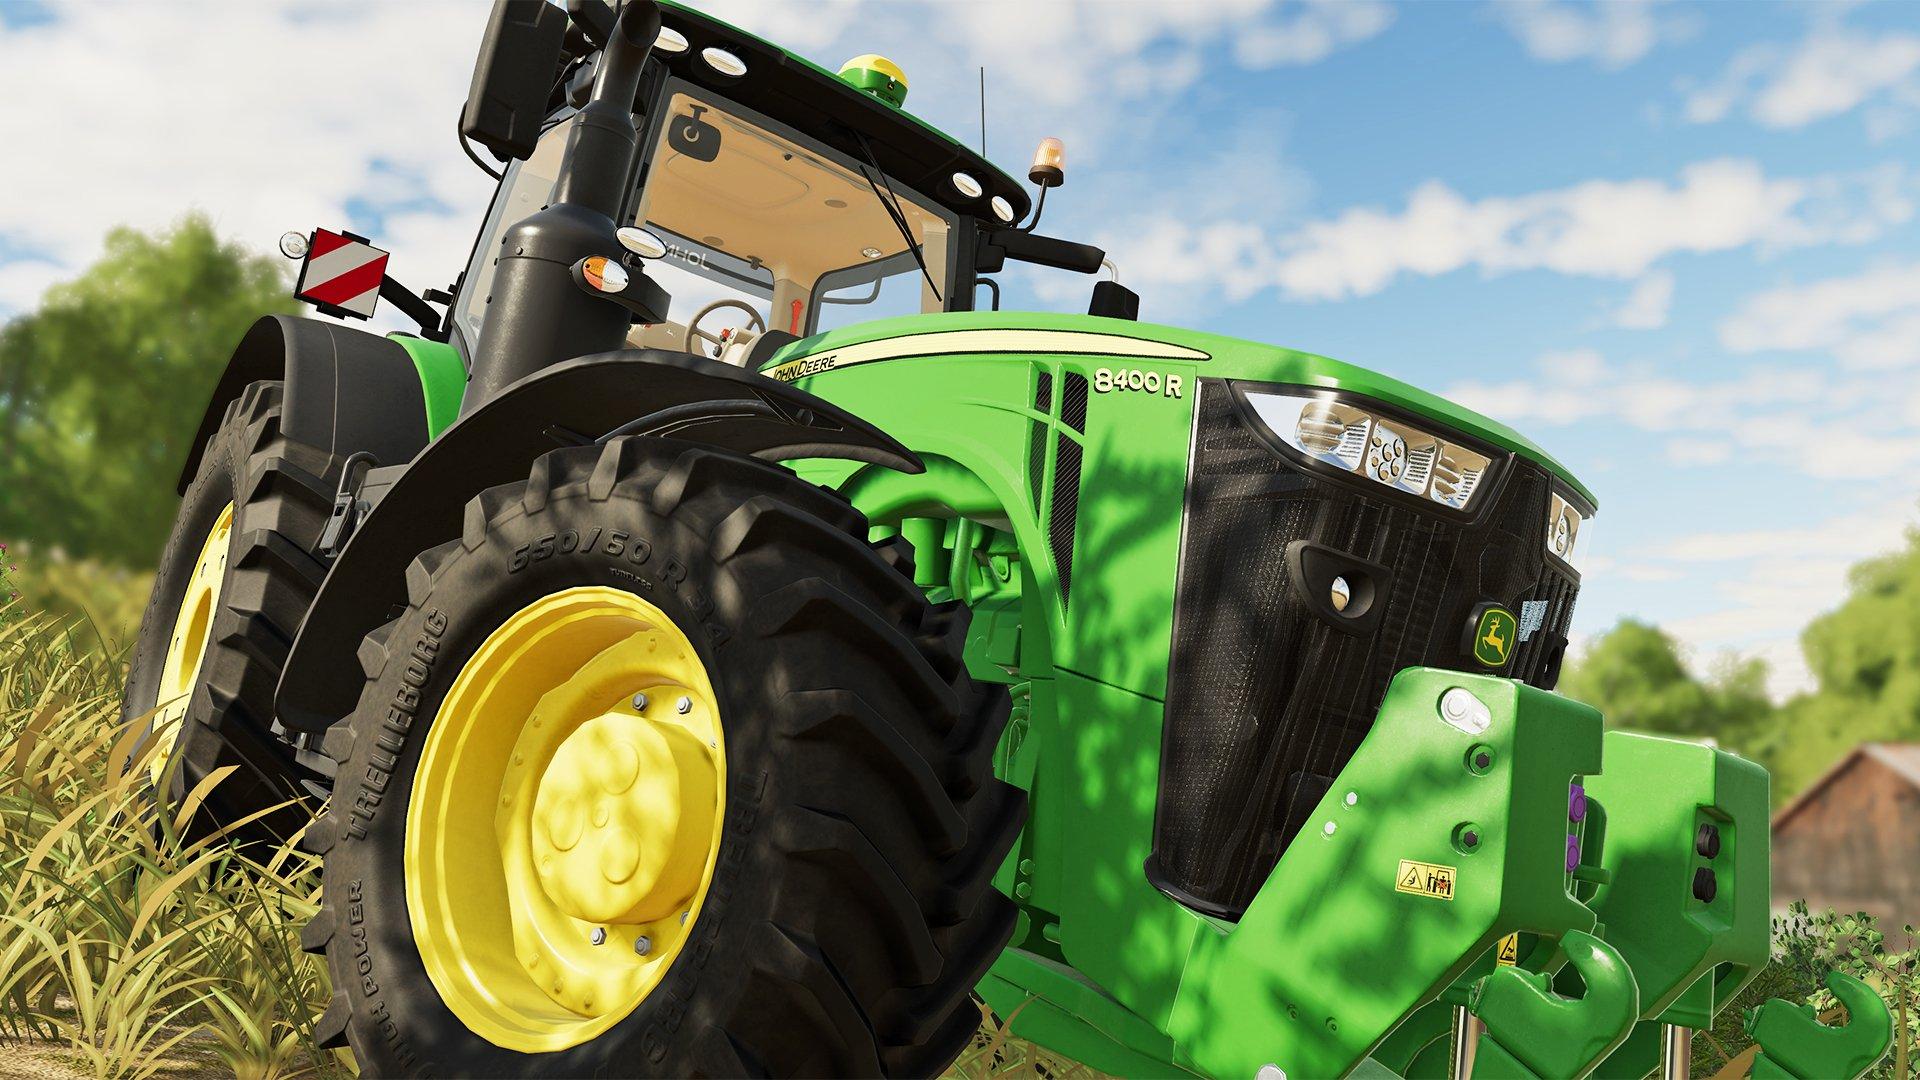  Farming Simulator 19: Premium Edition (PS4) : Video Games